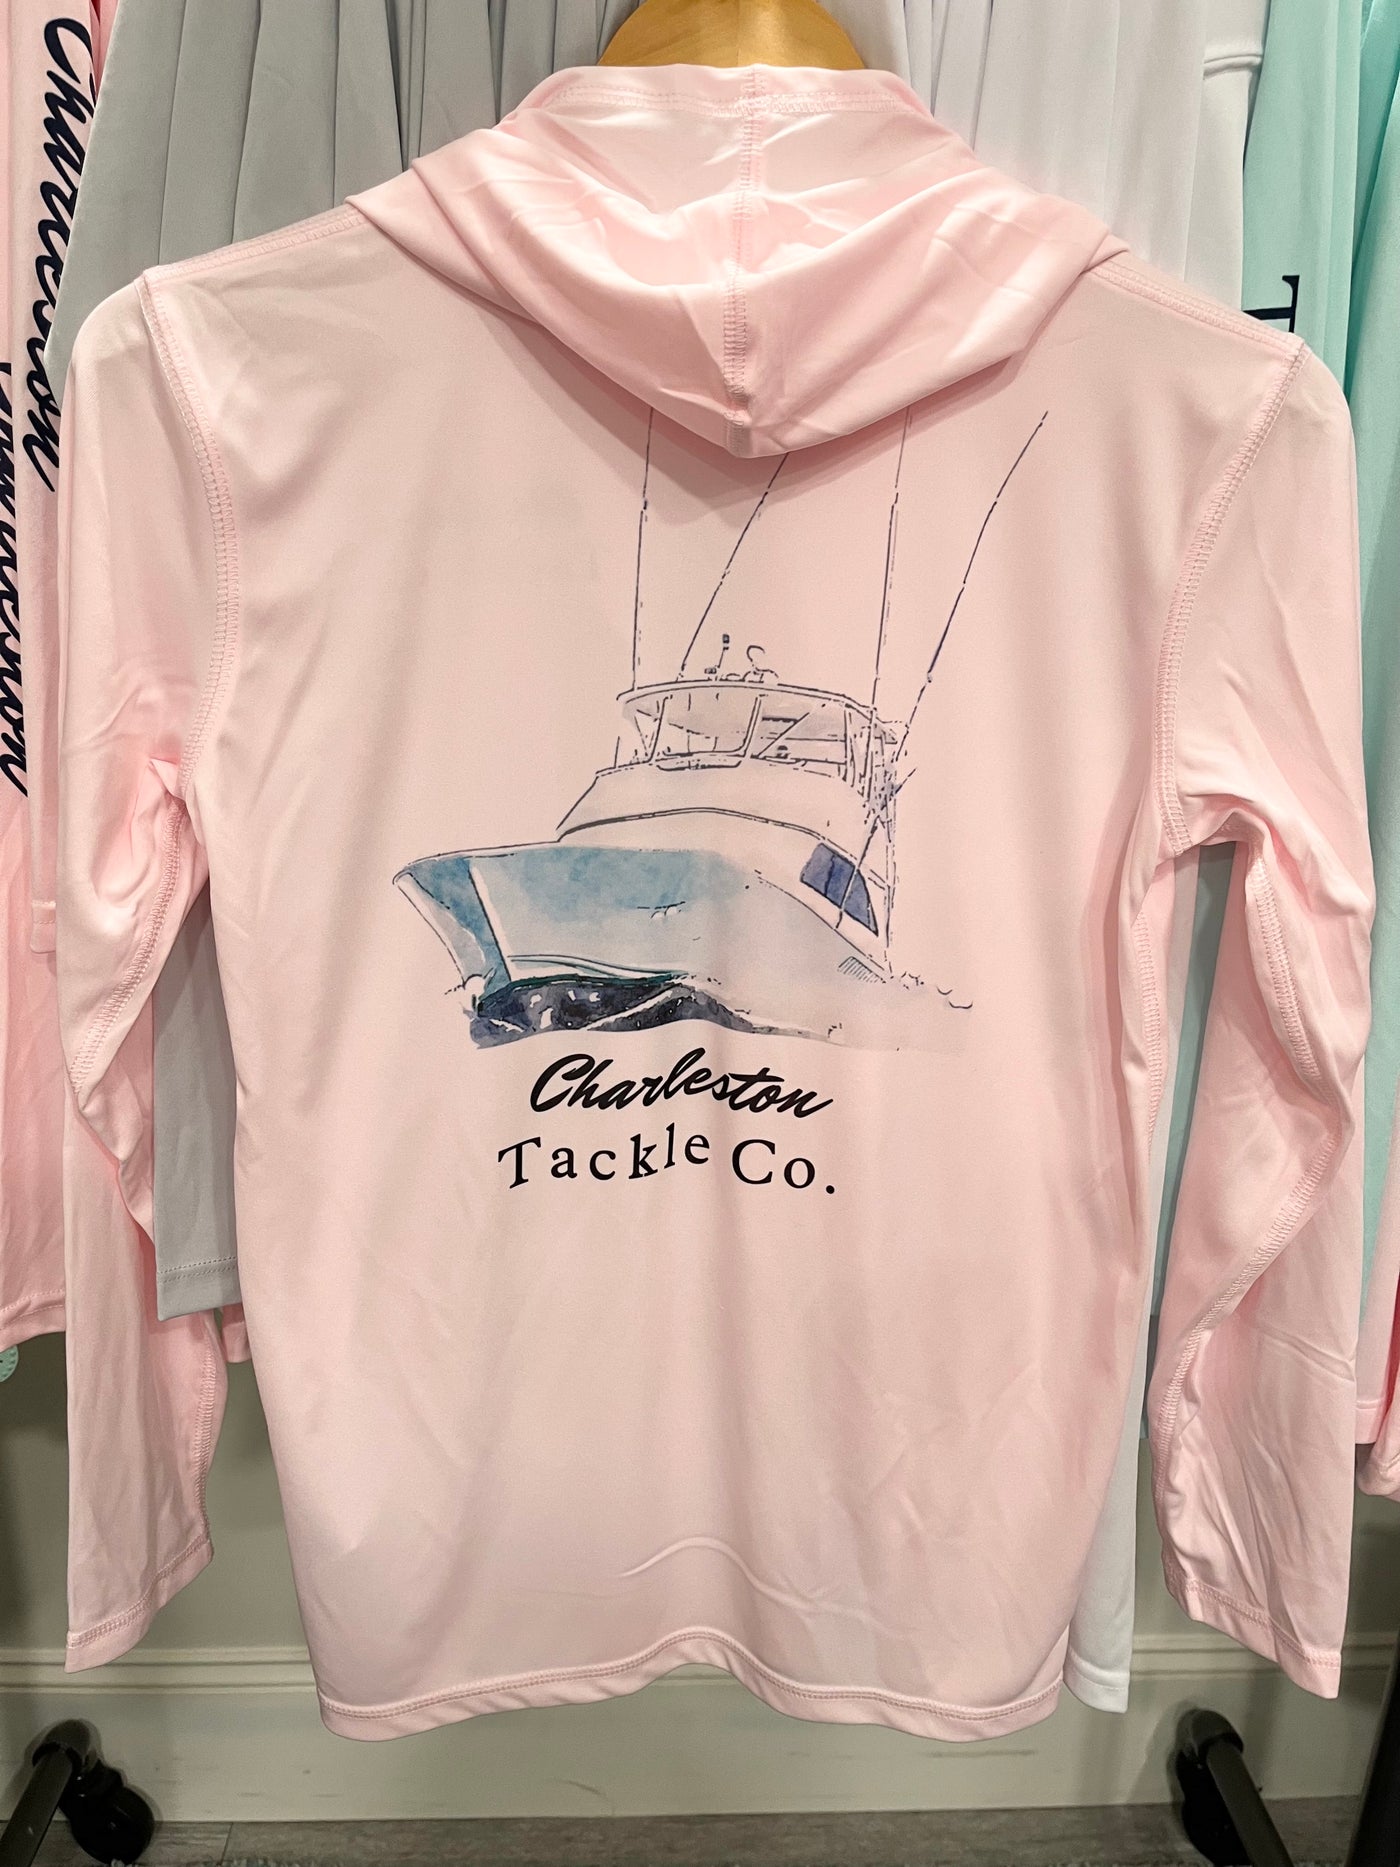 Charleston Tackle Co VIKING Hoodie Long Sleeve PFG Fishing Shirt- Youth-  Pink and Pearl Grey